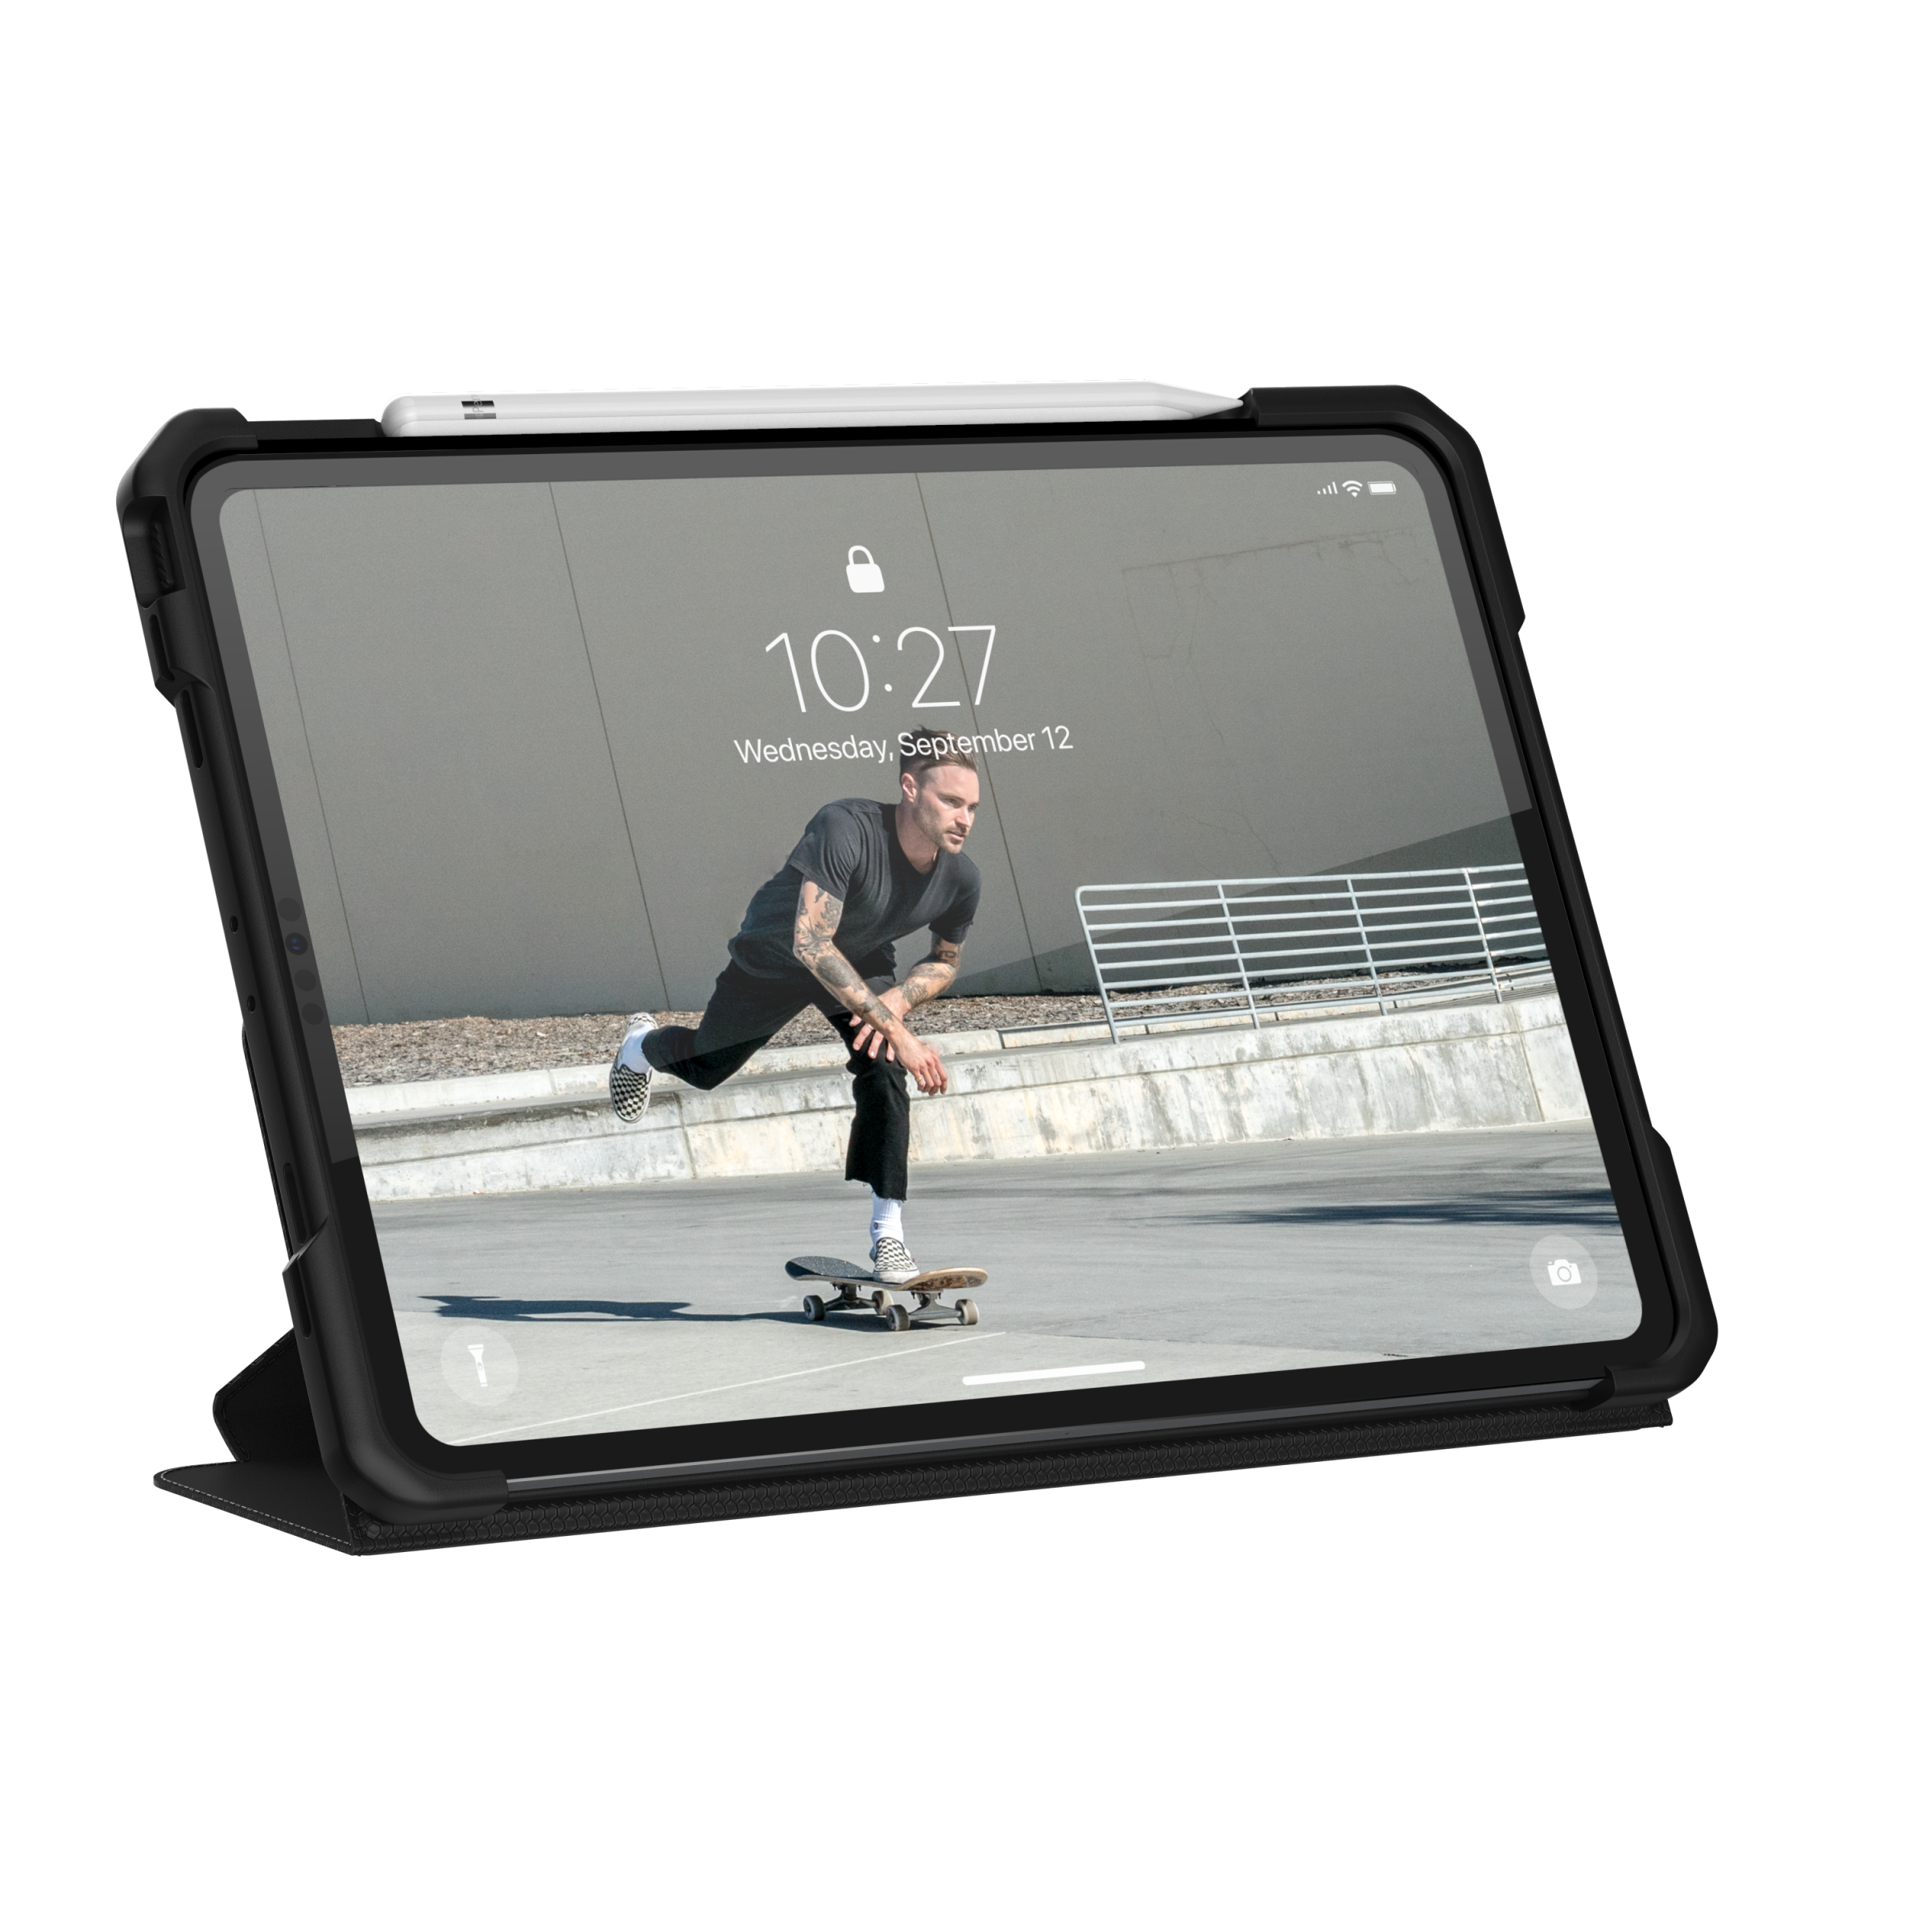 Metropolis Series Case iPad Pro 11 2020 Zwart